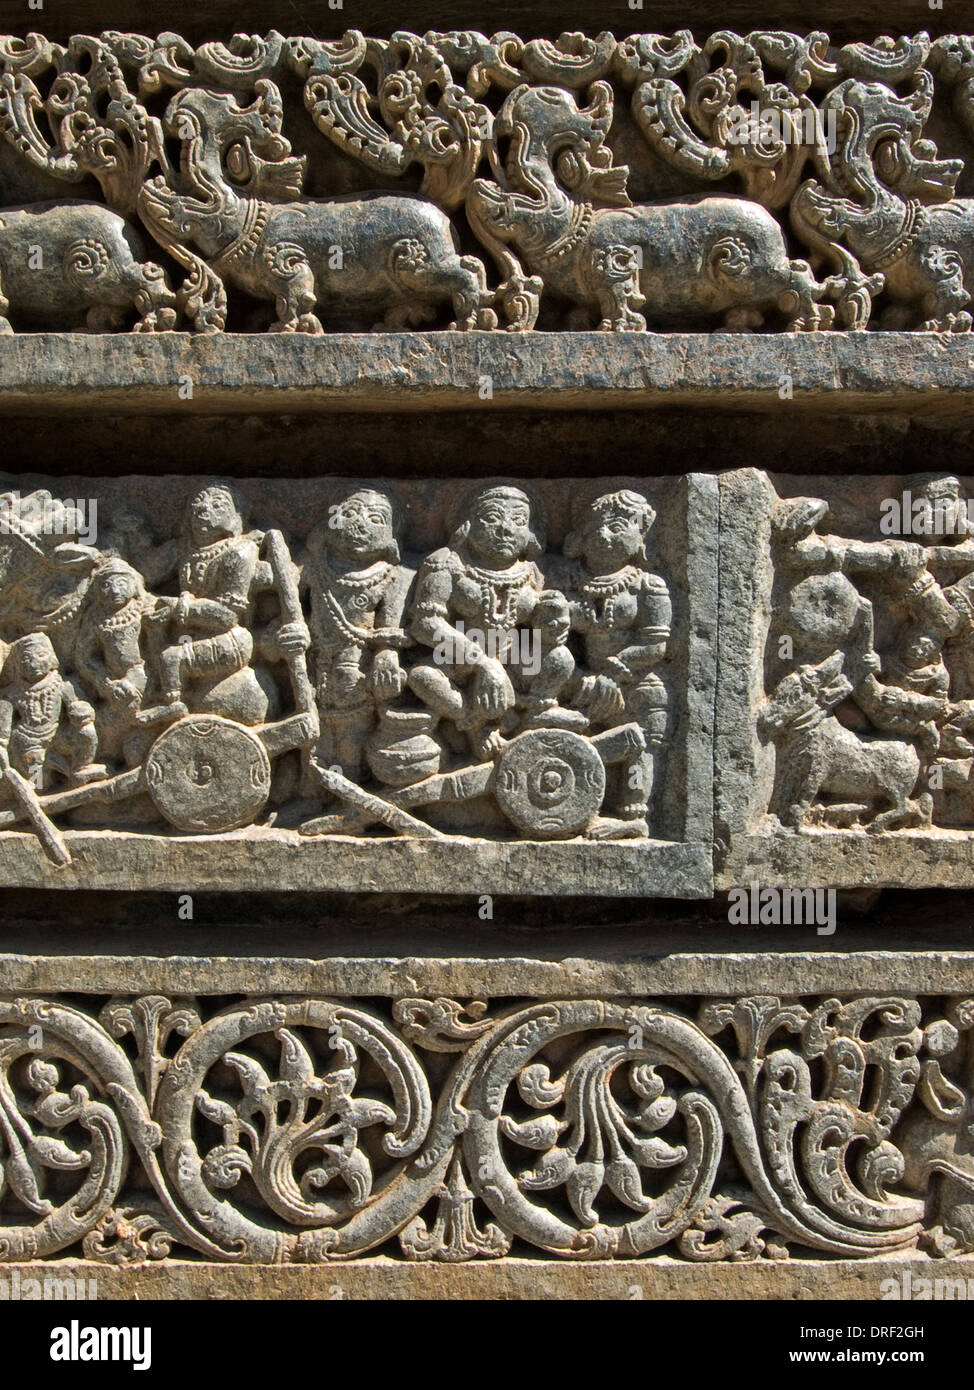 Un détail d'une frise dans le temple de Somnathpur montre hippo-comme des animaux, les hommes occupés à diverses activités et un modèle de feuille Banque D'Images